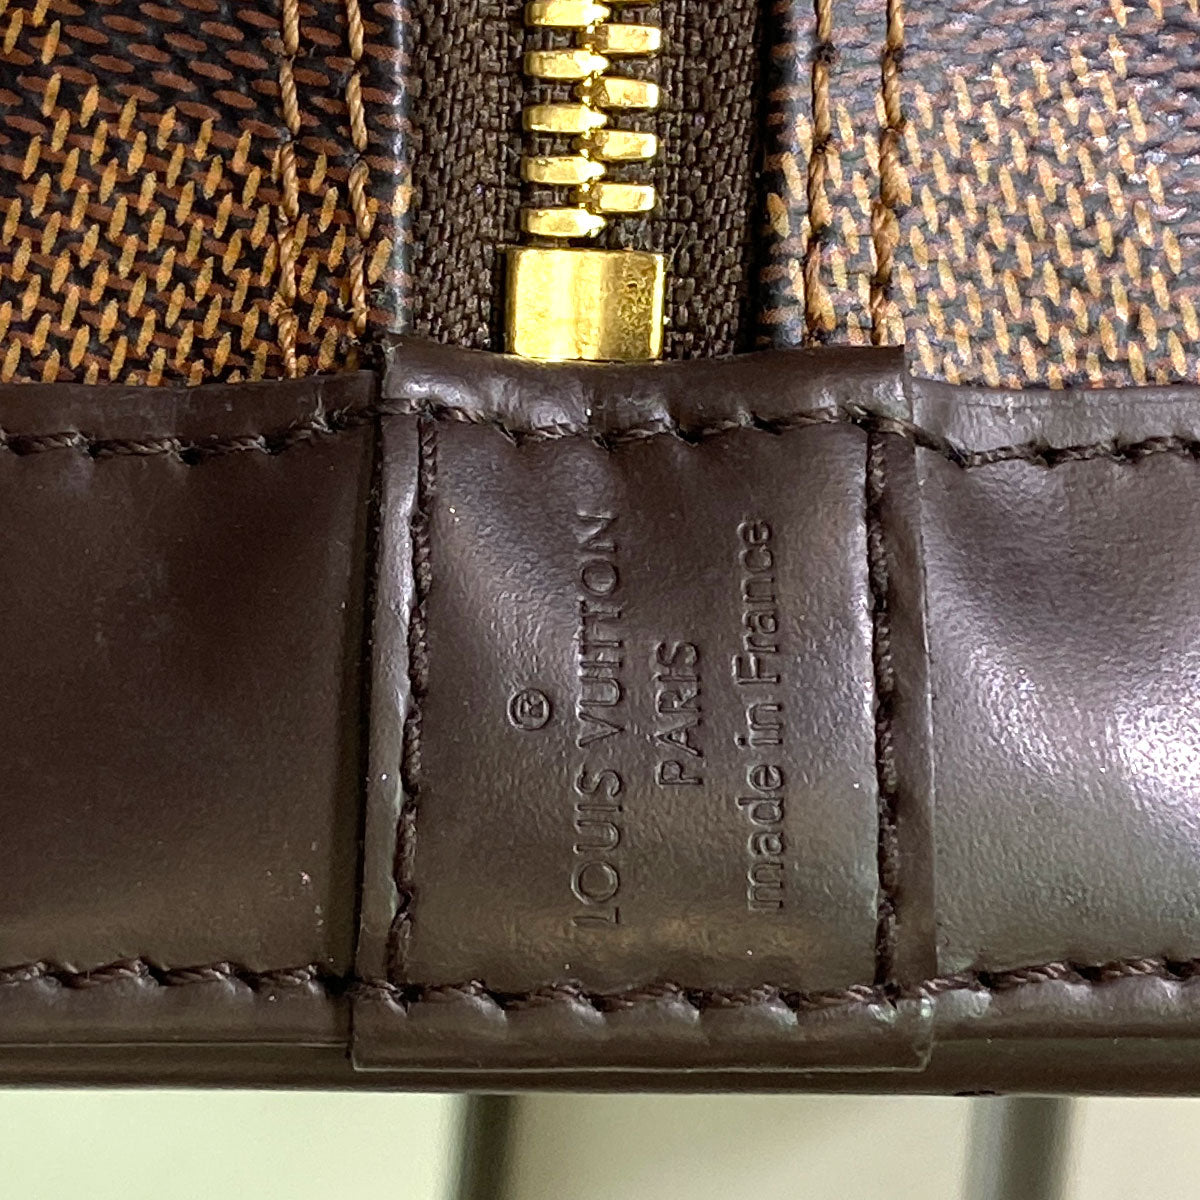 Louis Vuitton Damier Ebene Alma BB w/ Strap - Brown Handle Bags, Handbags -  LOU735513